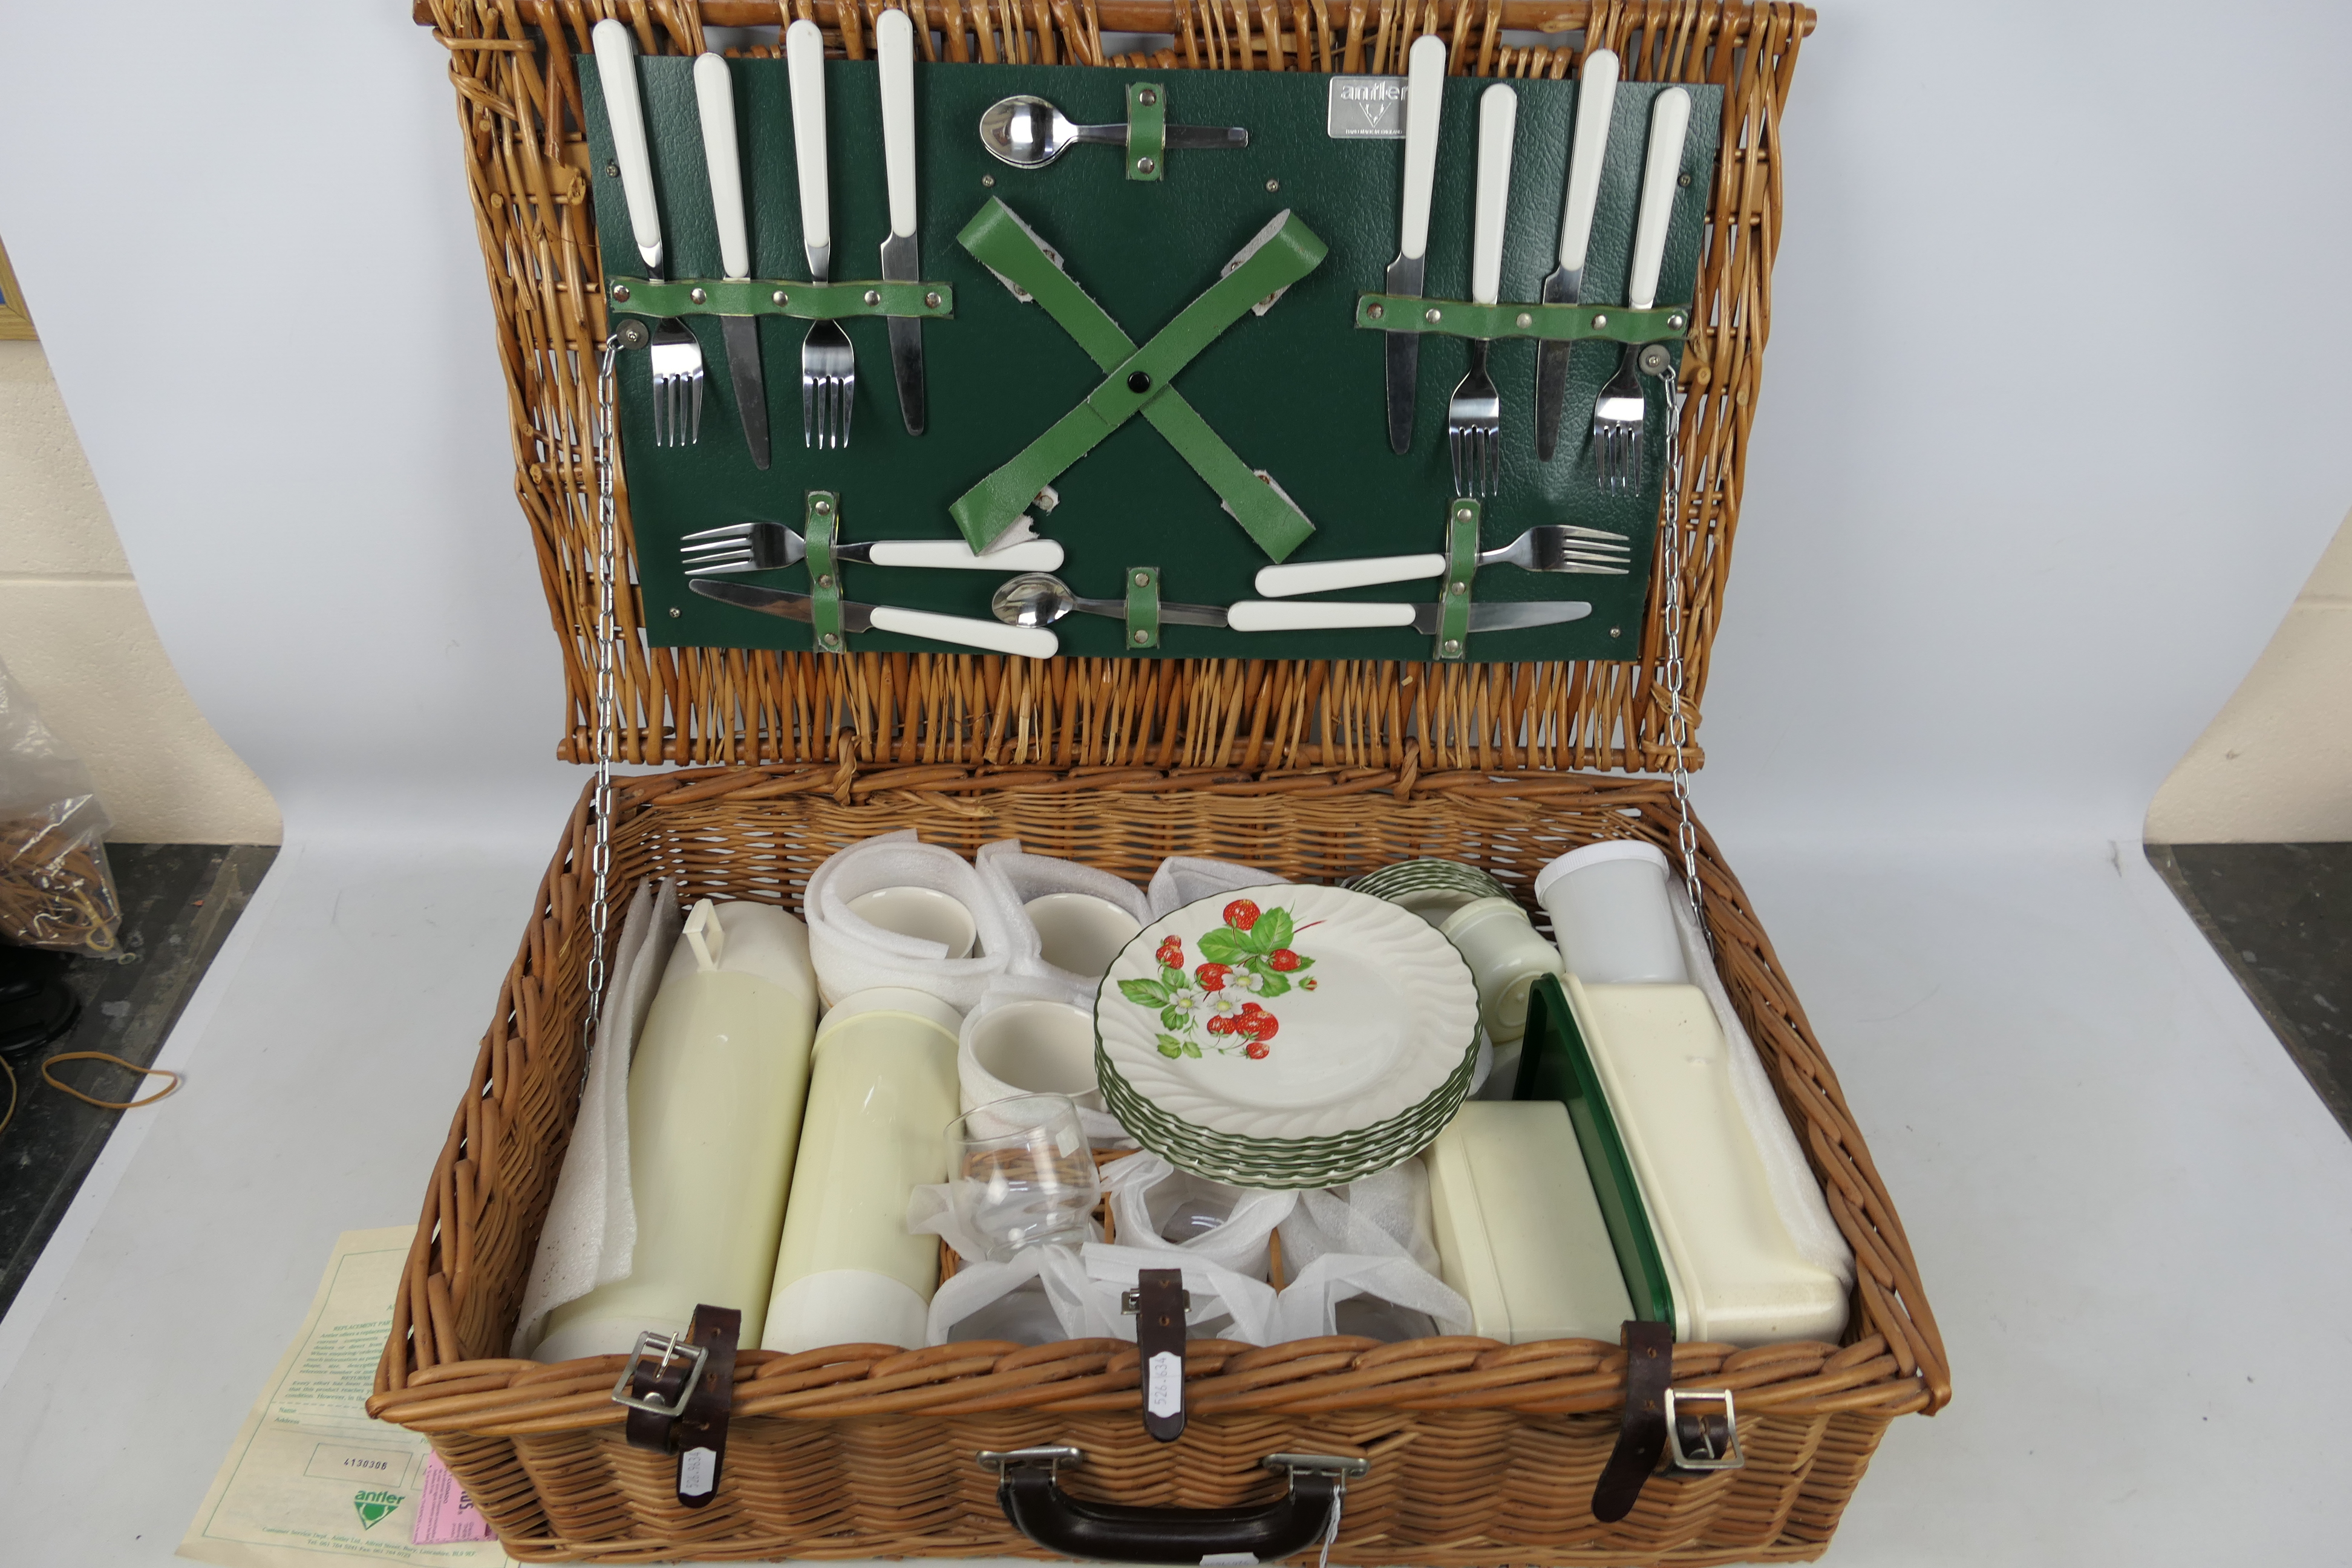 A vintage Antler picnic set in wicker basket.